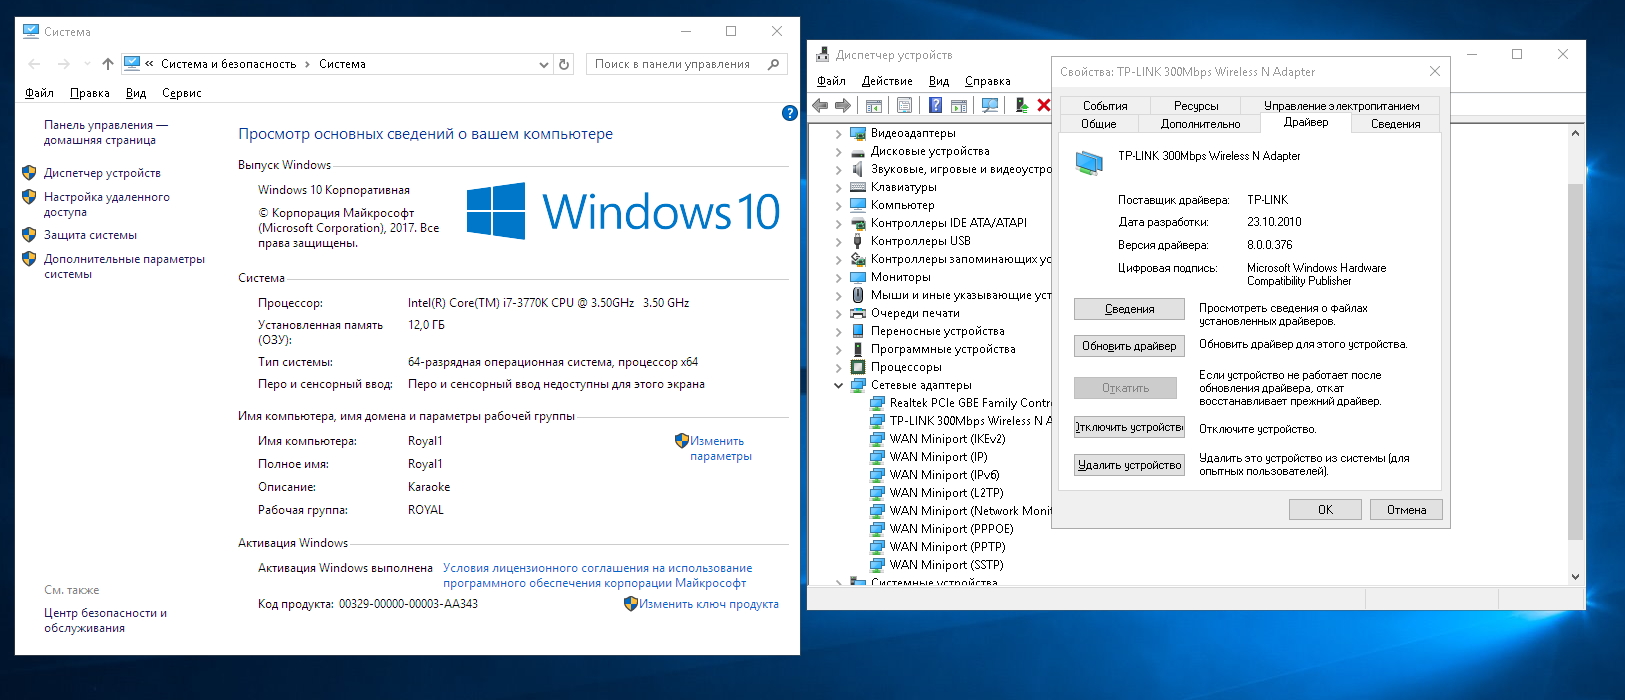 Драйверы для игр на windows 10. Обновление драйверов Windows 10. Драйвера для Windows 10. Обновить драйвера на Windows 10. Обновление драйверов видеокарты.